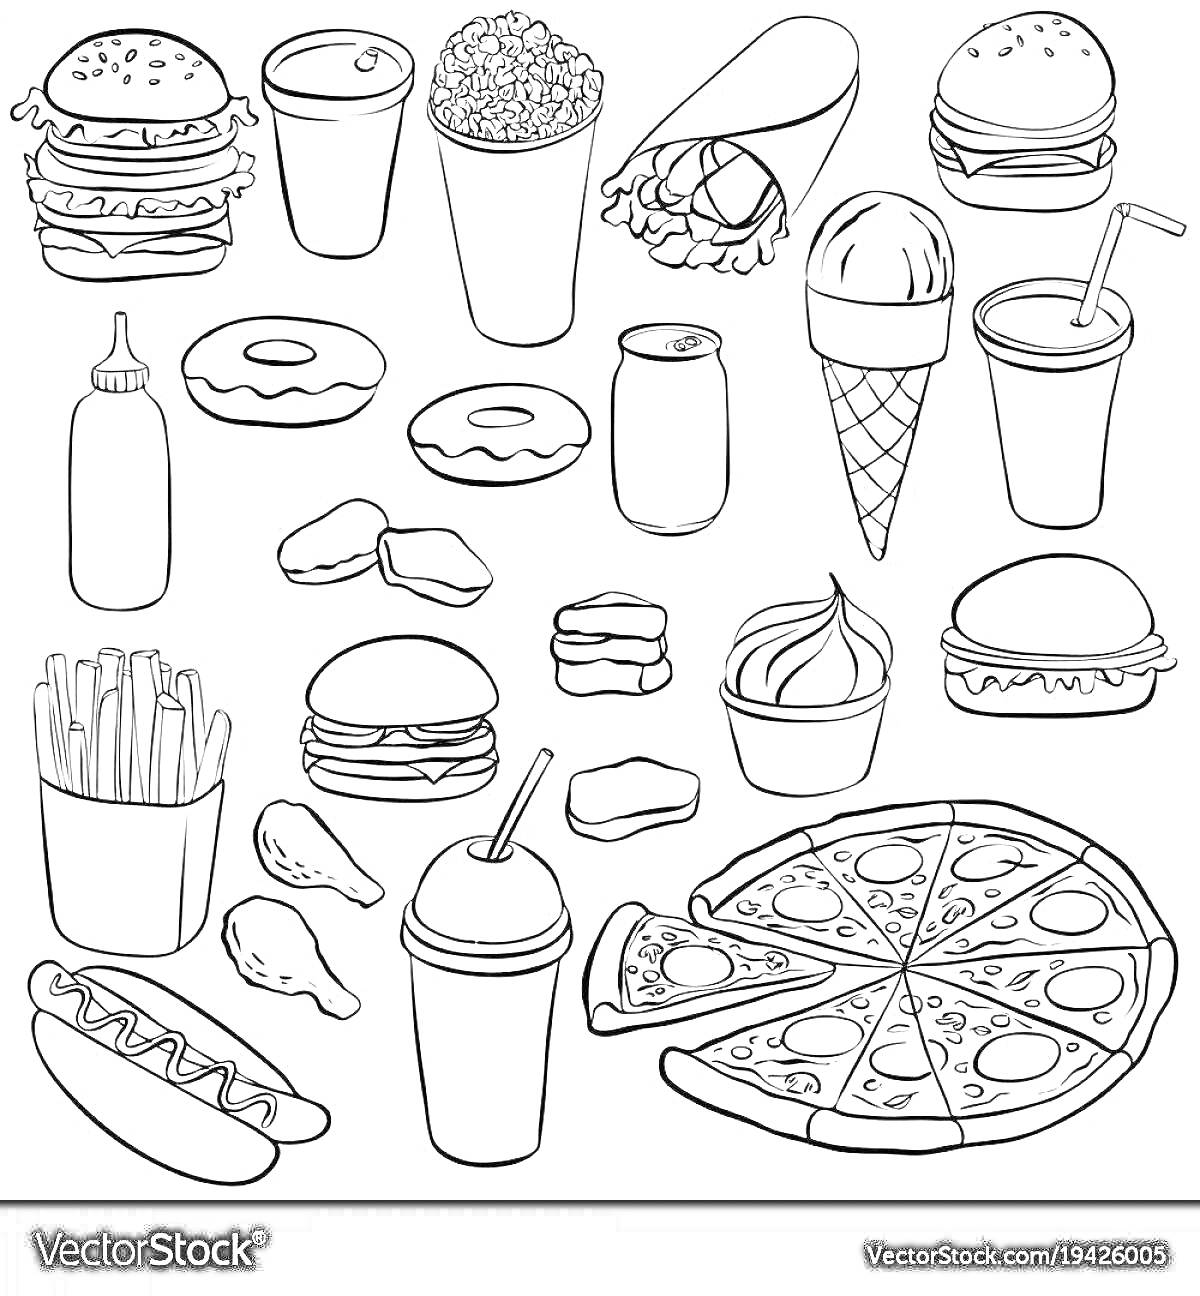 Раскраска Гамбургеры, чизбургеры, картошка фри, мороженое, газировка, куриные крылышки, кусочки курицы, хот-дог, мятый картофель, кекс-пончики, большая пицца и соус